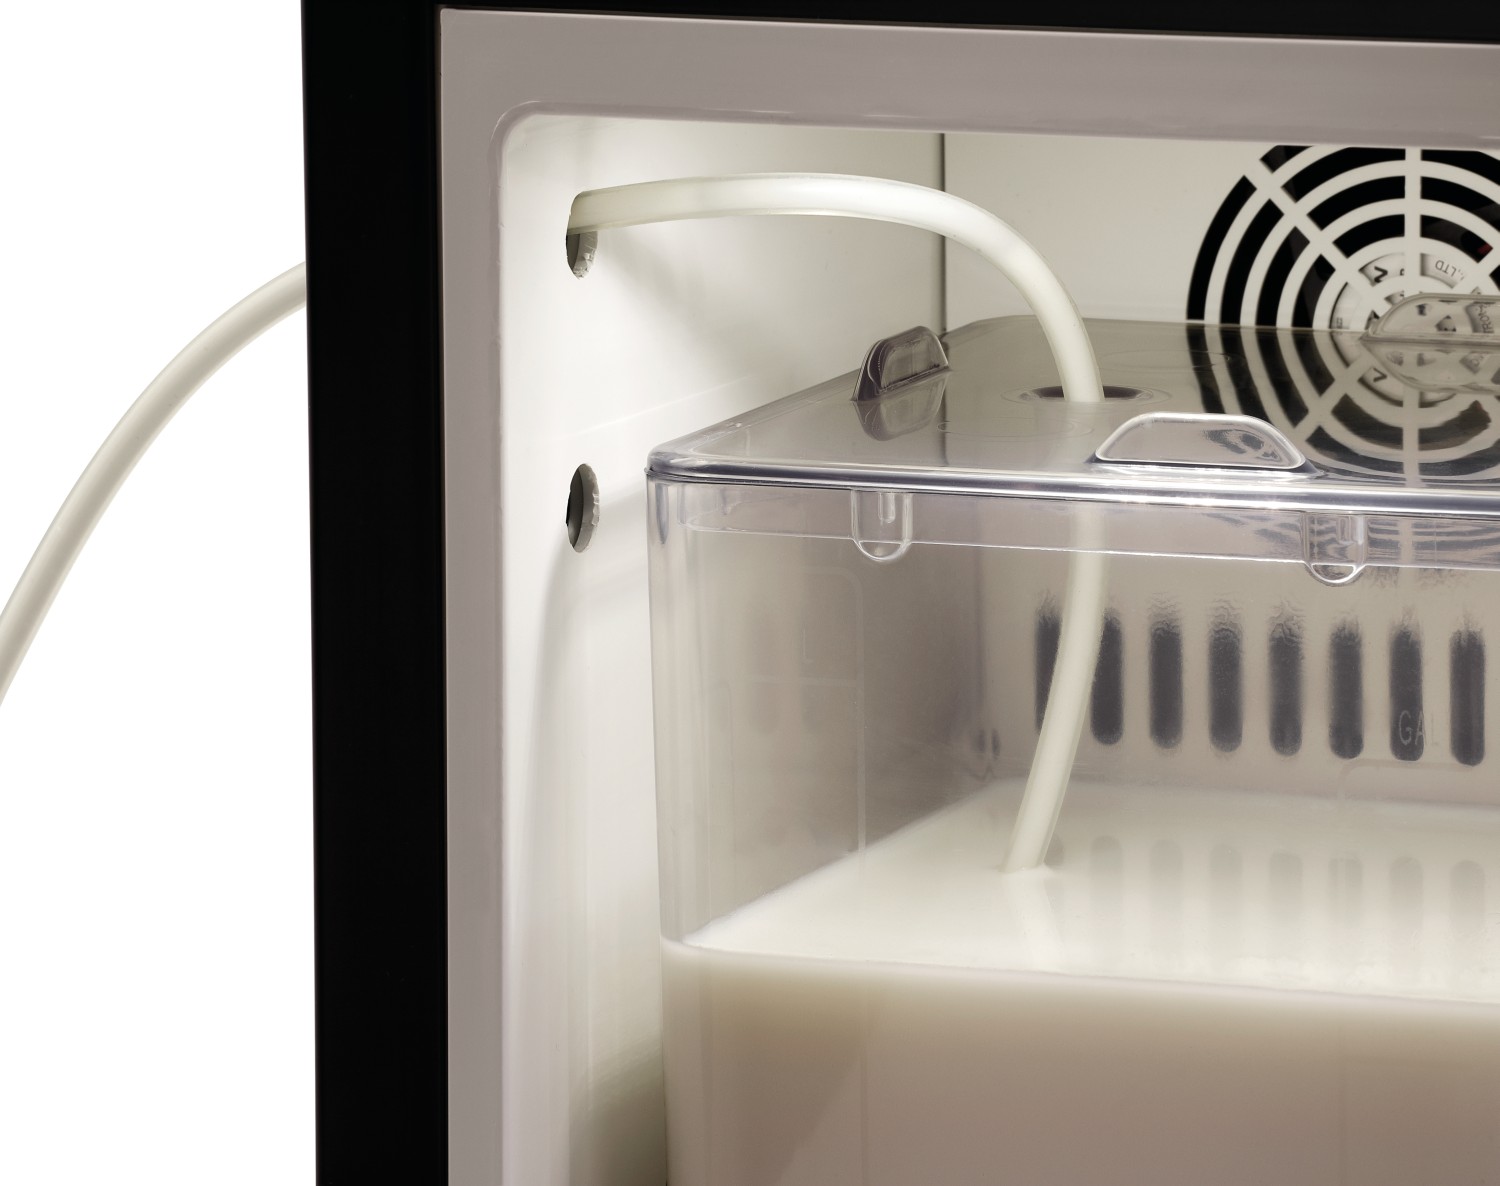  Bartscher Réfrigérateur à lait KV8,1L 